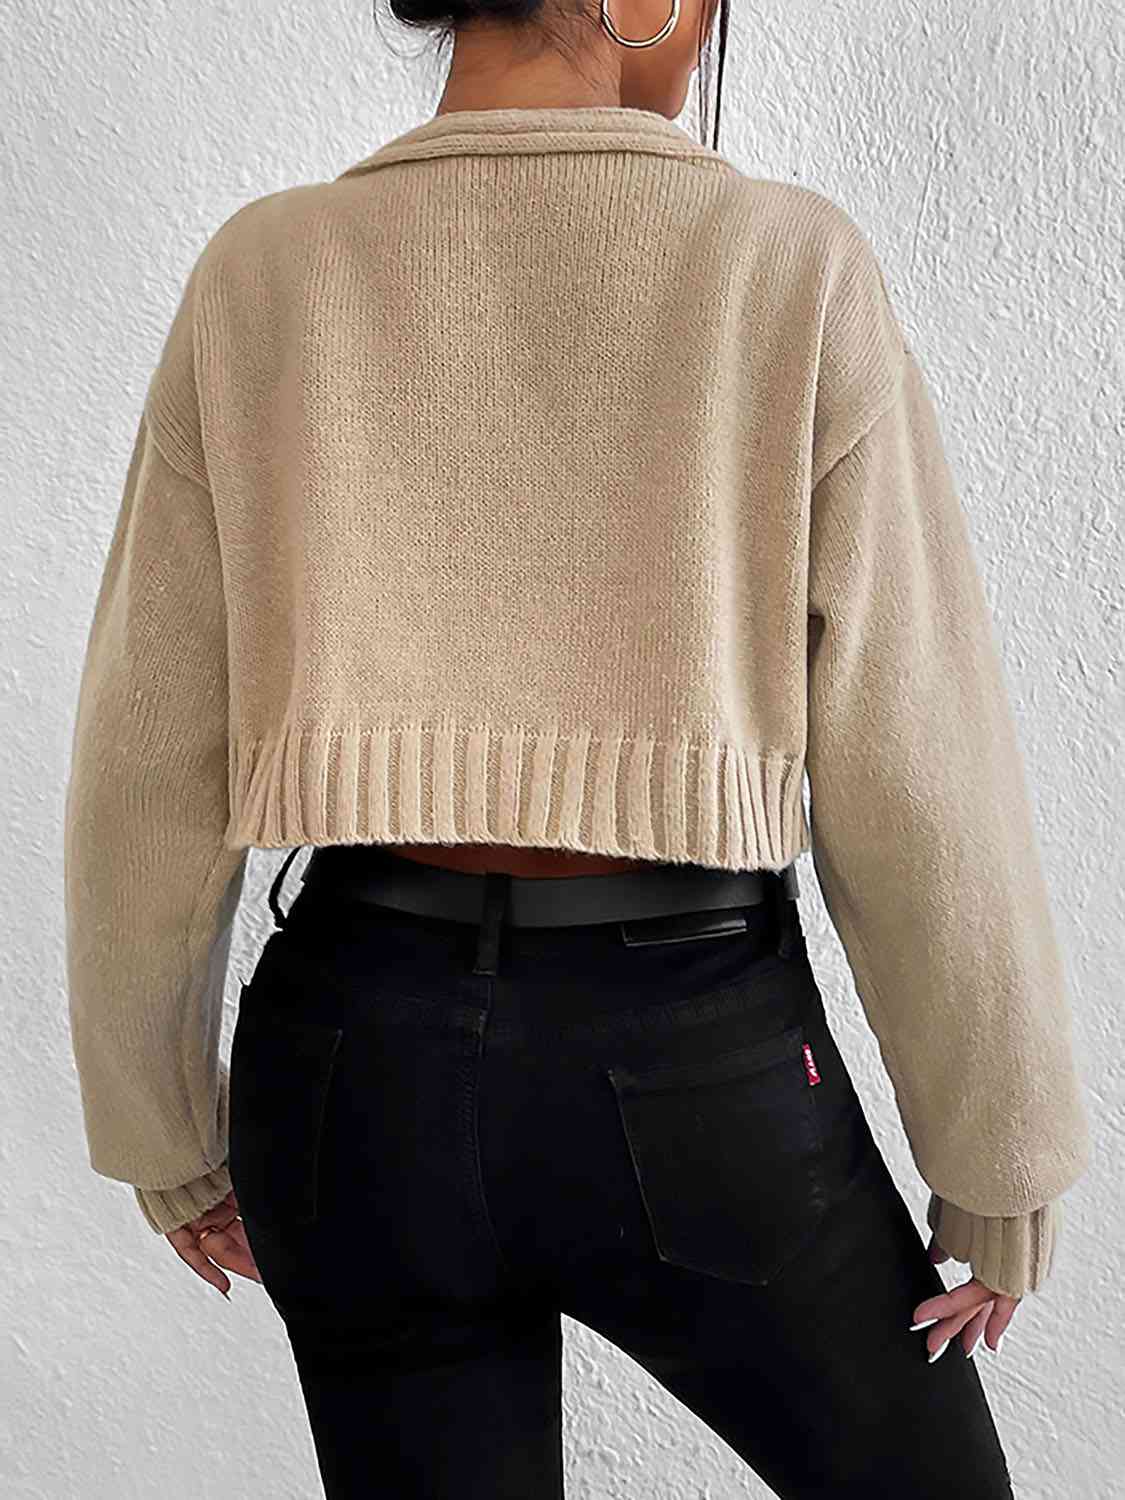 Women's Plain Sweater Cami and Cardigan Set